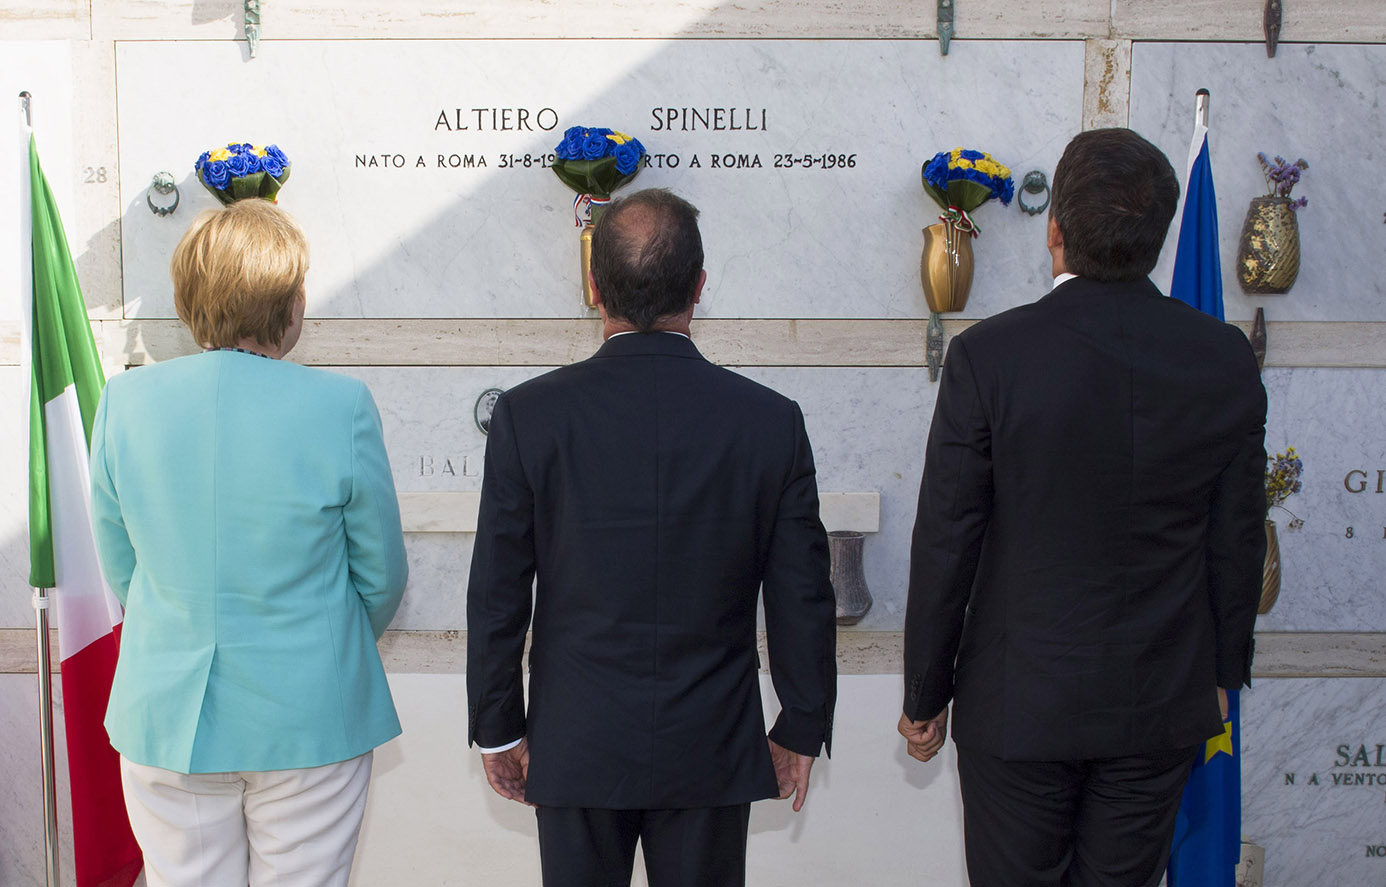 La visita alla tomba di Spinelli di Renzi, Merkel e Hollande. Ventotene 22 agosto 2016